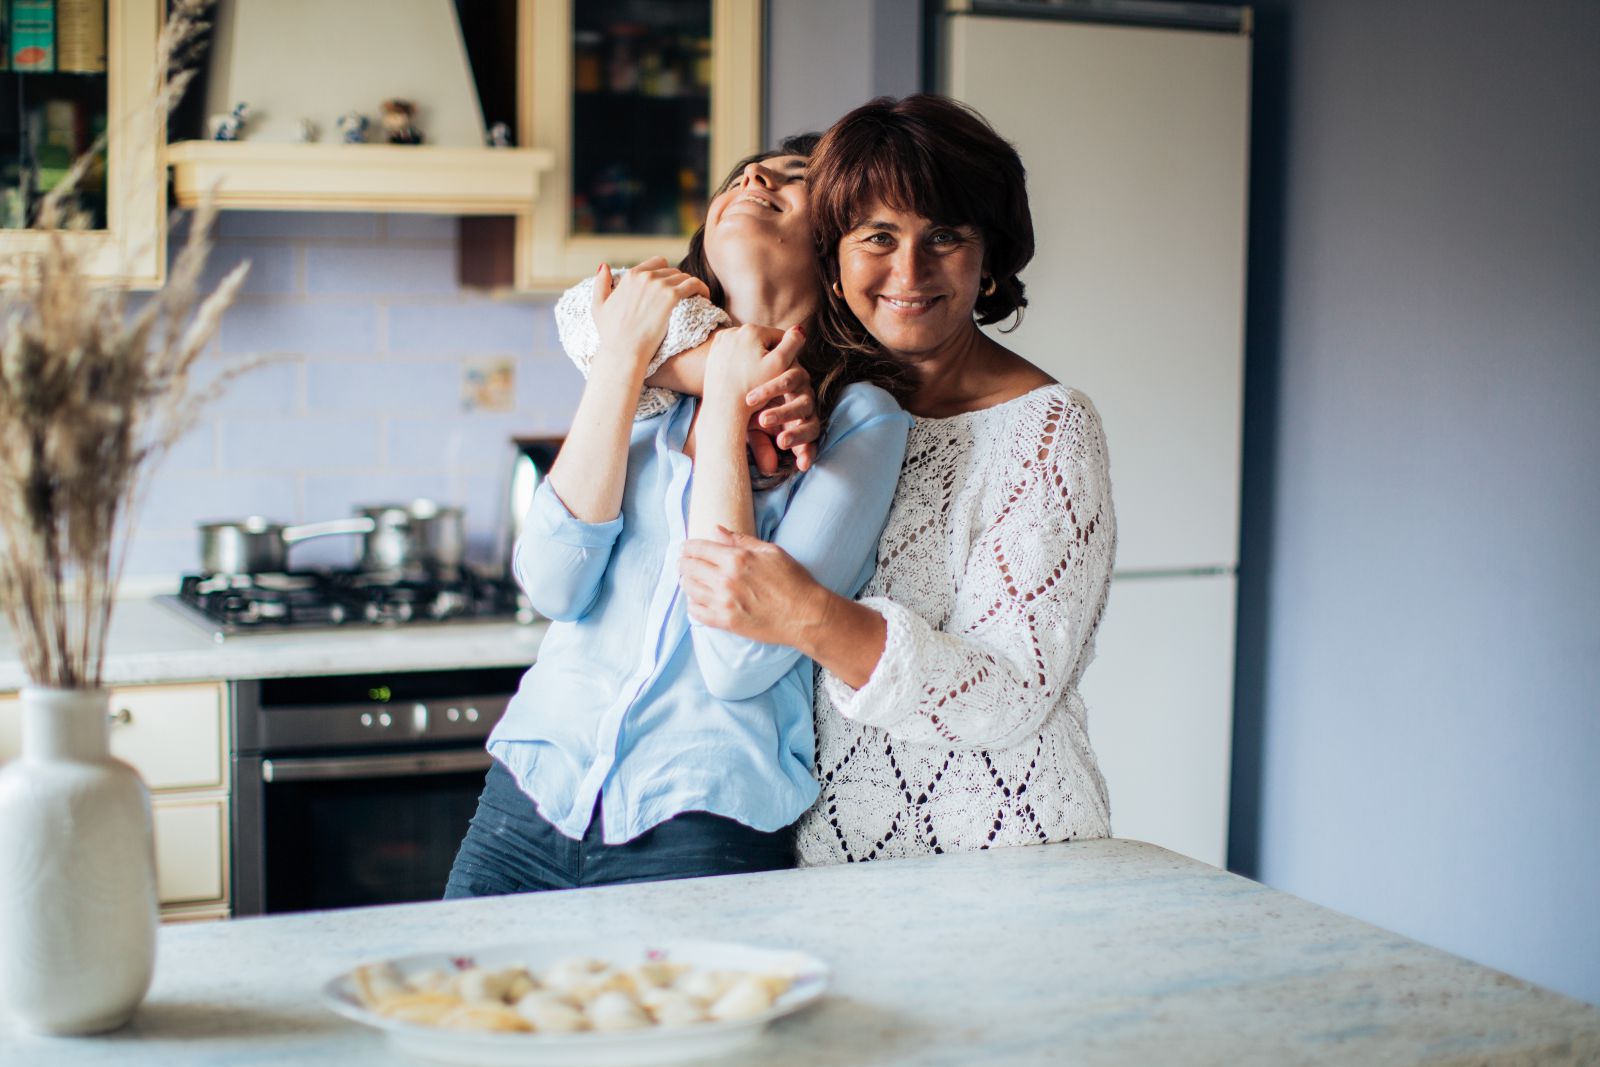 Mulher abraçando outra mulher na cozinha